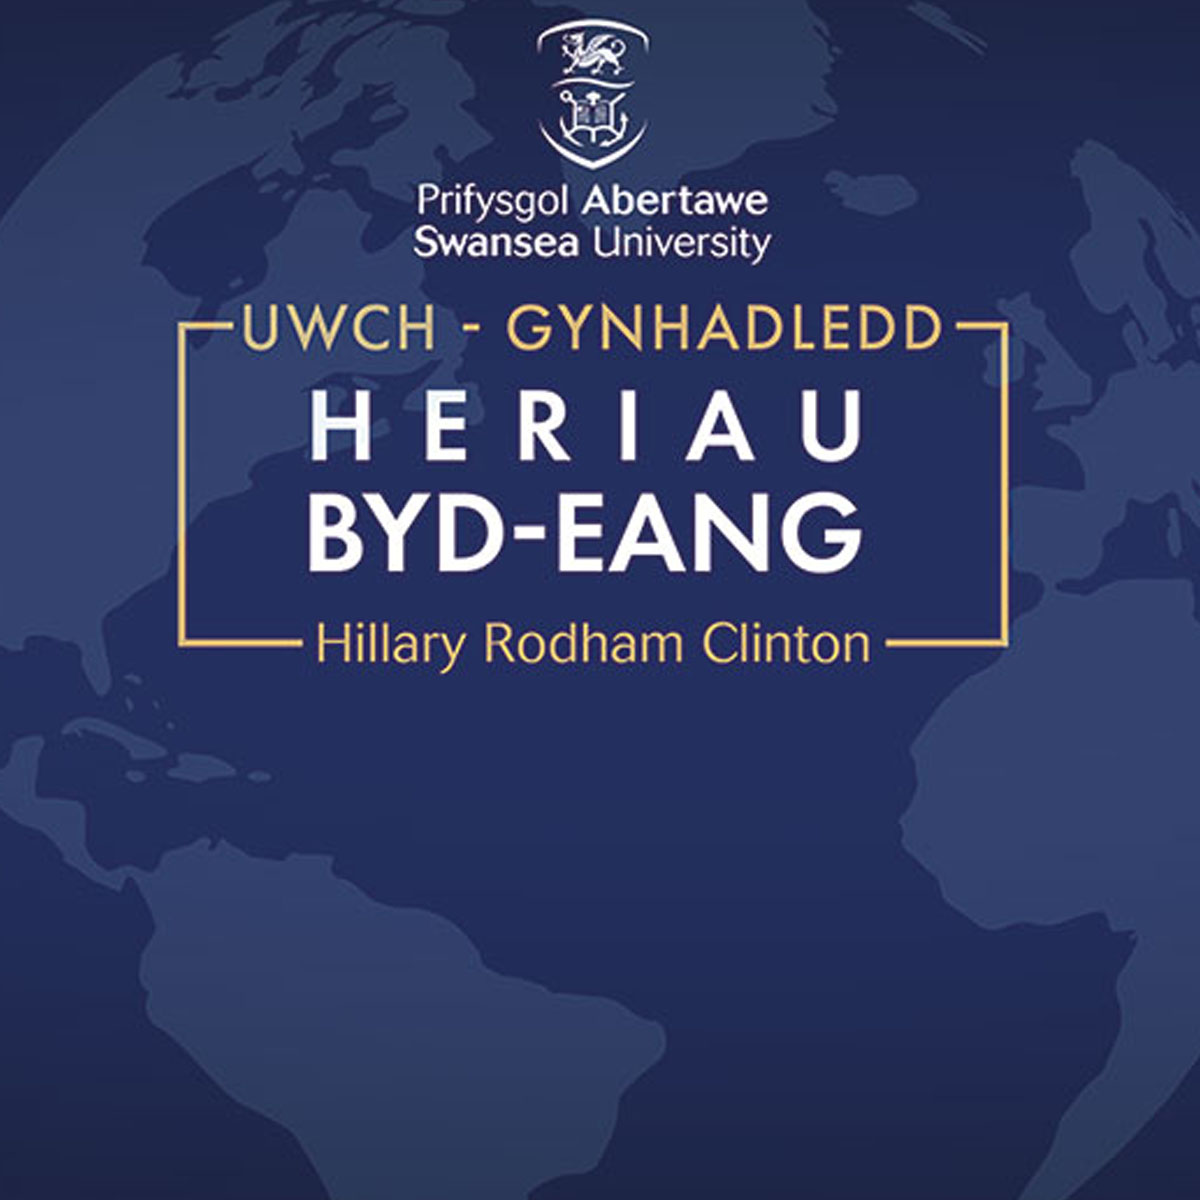 Uwch-Gynhadledd Heriau Byd-eang branding